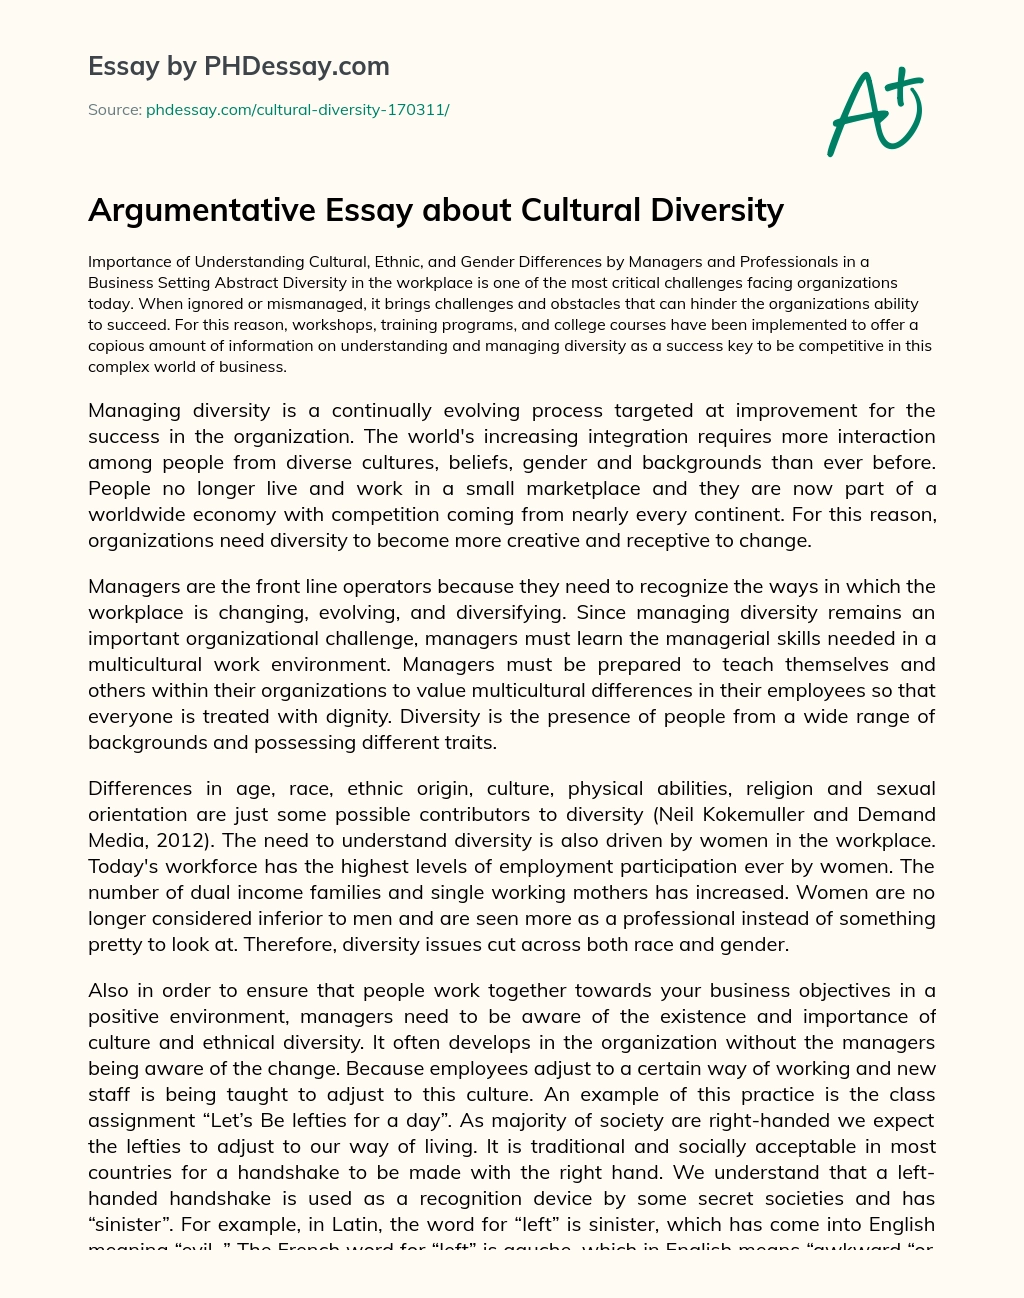 Argumentative Essay about Cultural Diversity essay